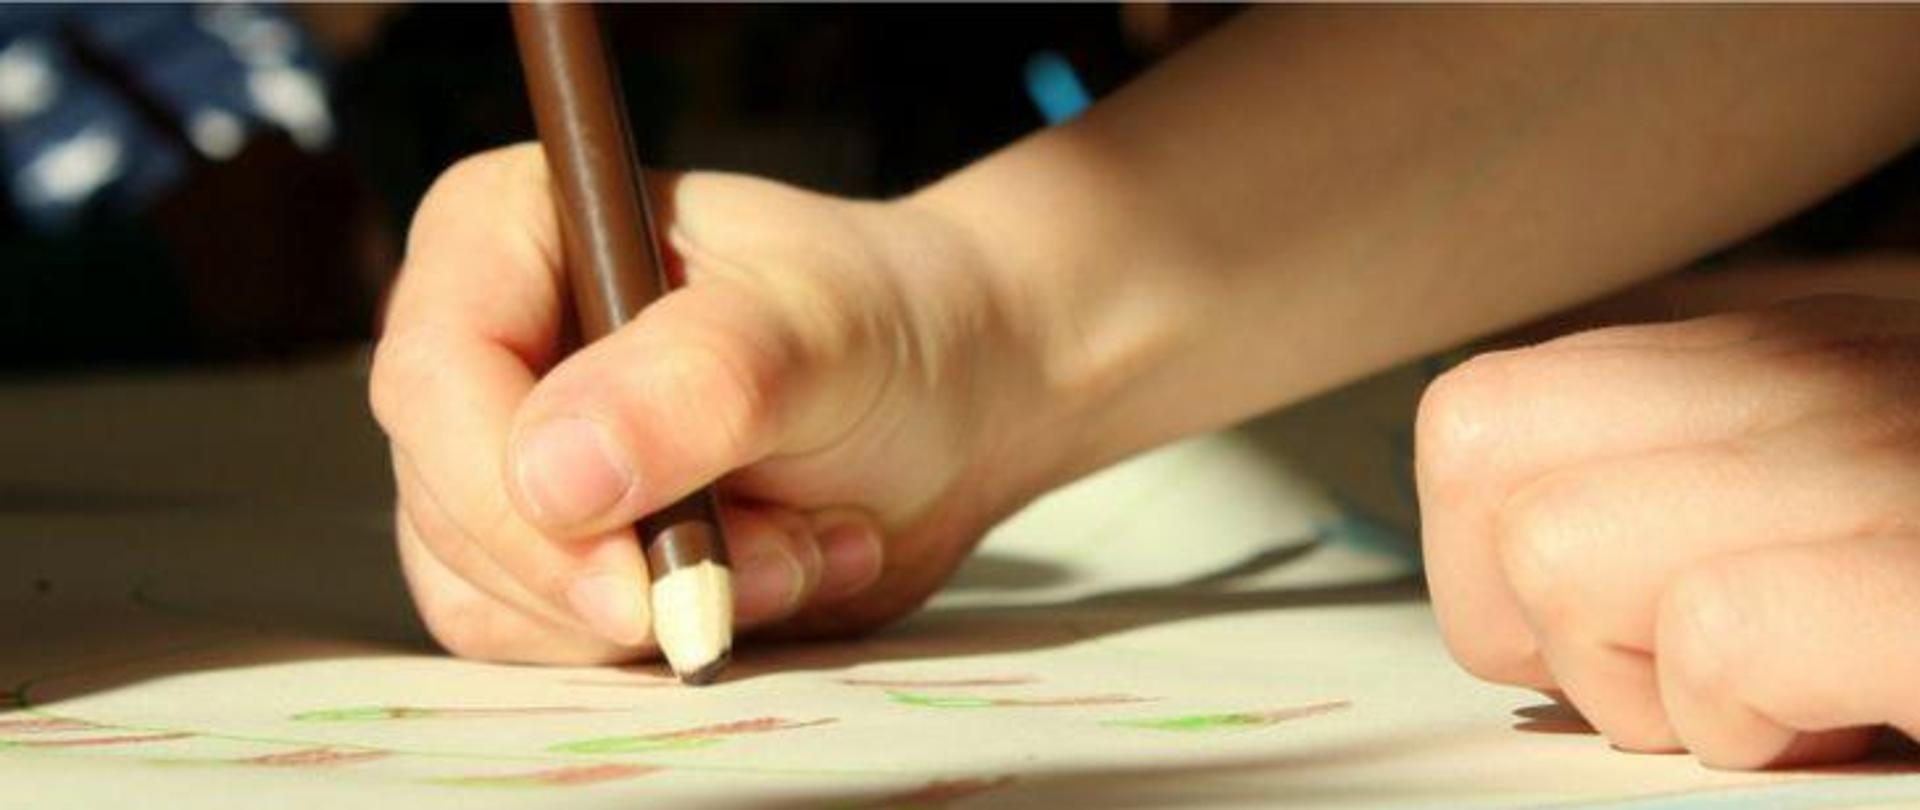 Dłoń dziecka trzymająca brązową kredkę podczas rysowania po papierze.